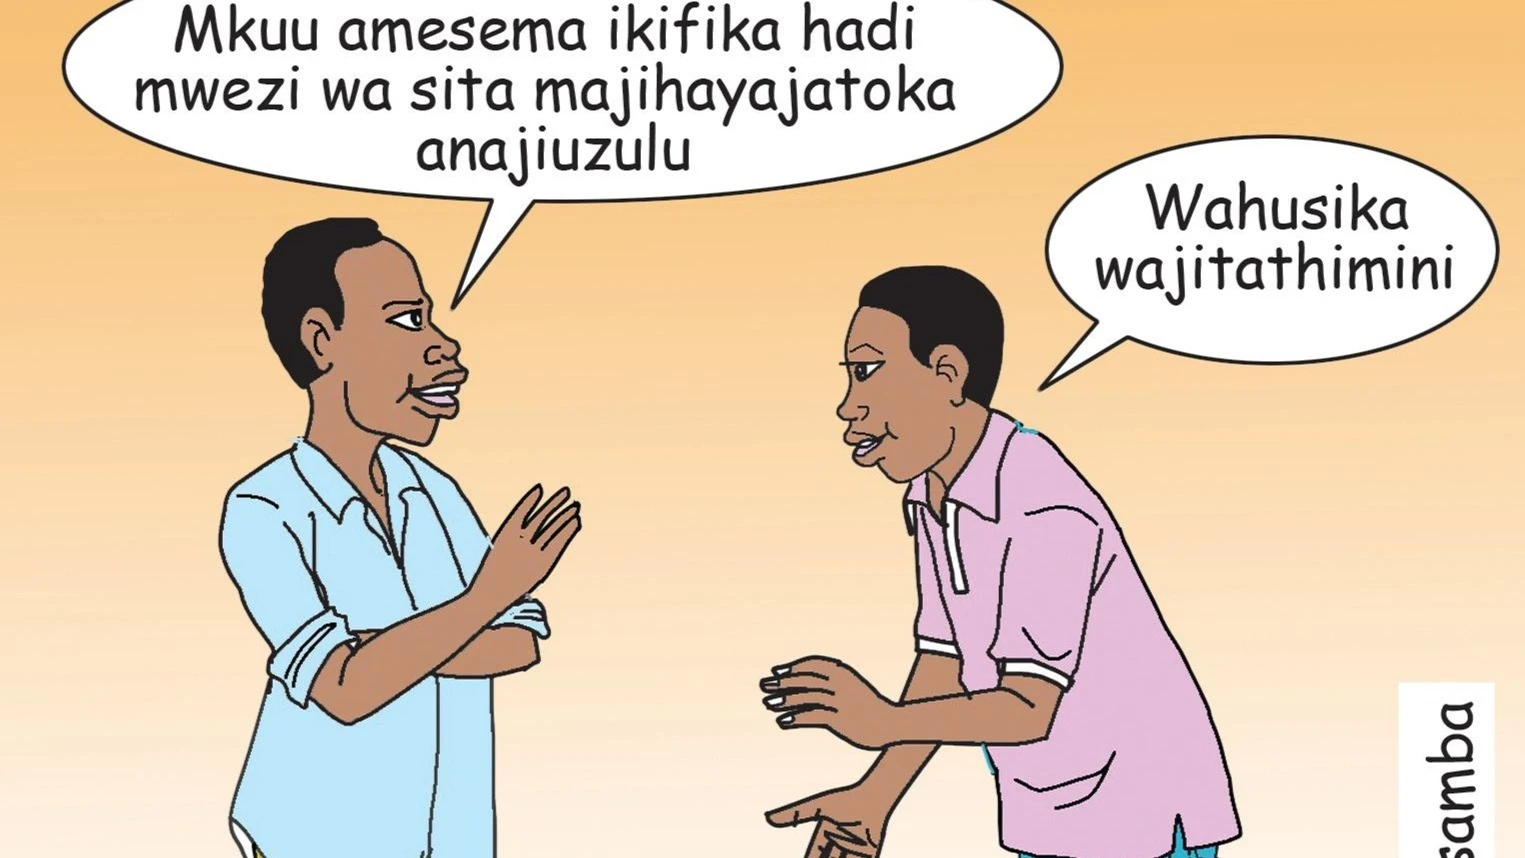 Mchoro wa katuni ukionesha majadilioano kuhusu makala hii juu ya uwajibikaji wa viongozi.